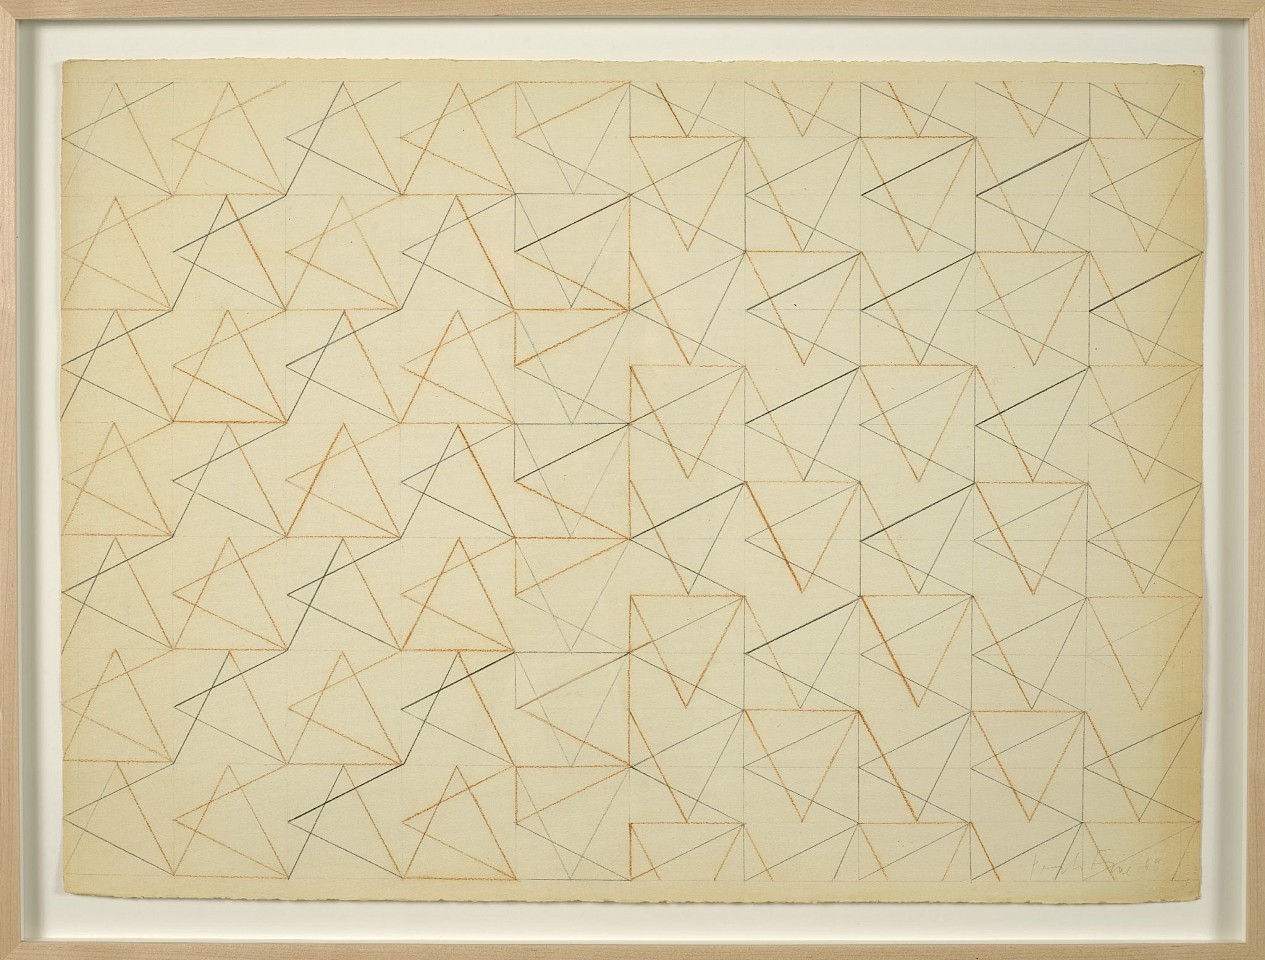 Perle Fine, All Aglow, 1969
Conte on Arches paper, 22 1/2 x 30 in. (57.1 x 76.2 cm)
© A.E. Artworks
FIN-00092